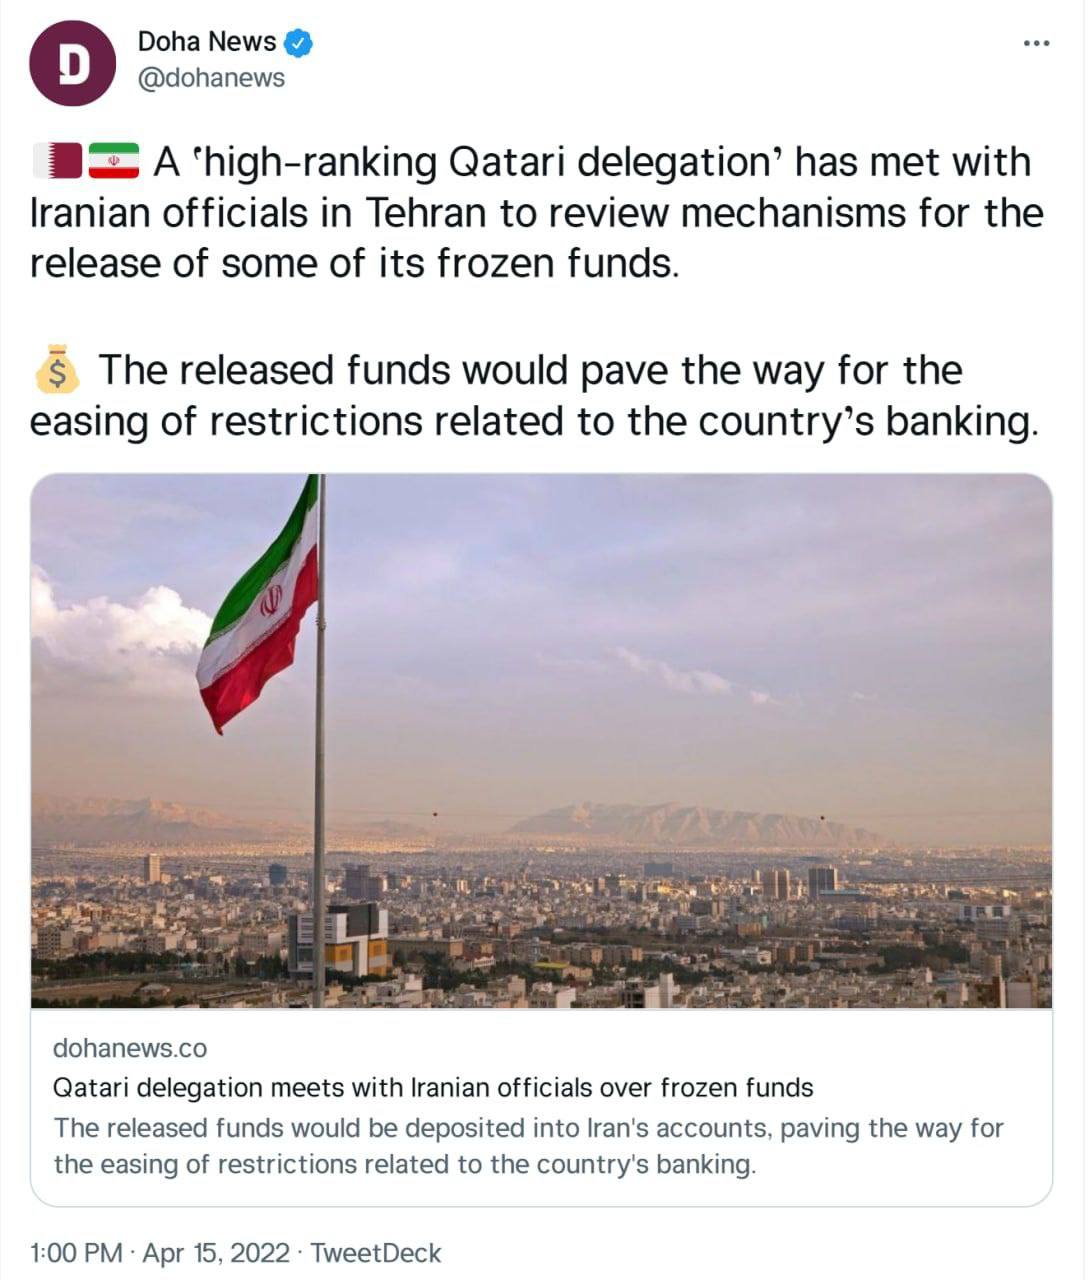 خبرگزاری دولتی قطر : یک «هیات عالی رتبه قطری» با مقامات ایرانی در تهران برای بررسی مکانیسم‌های آزادسازی برخی از وجوه مسدود شده خود دیدار کرده است.